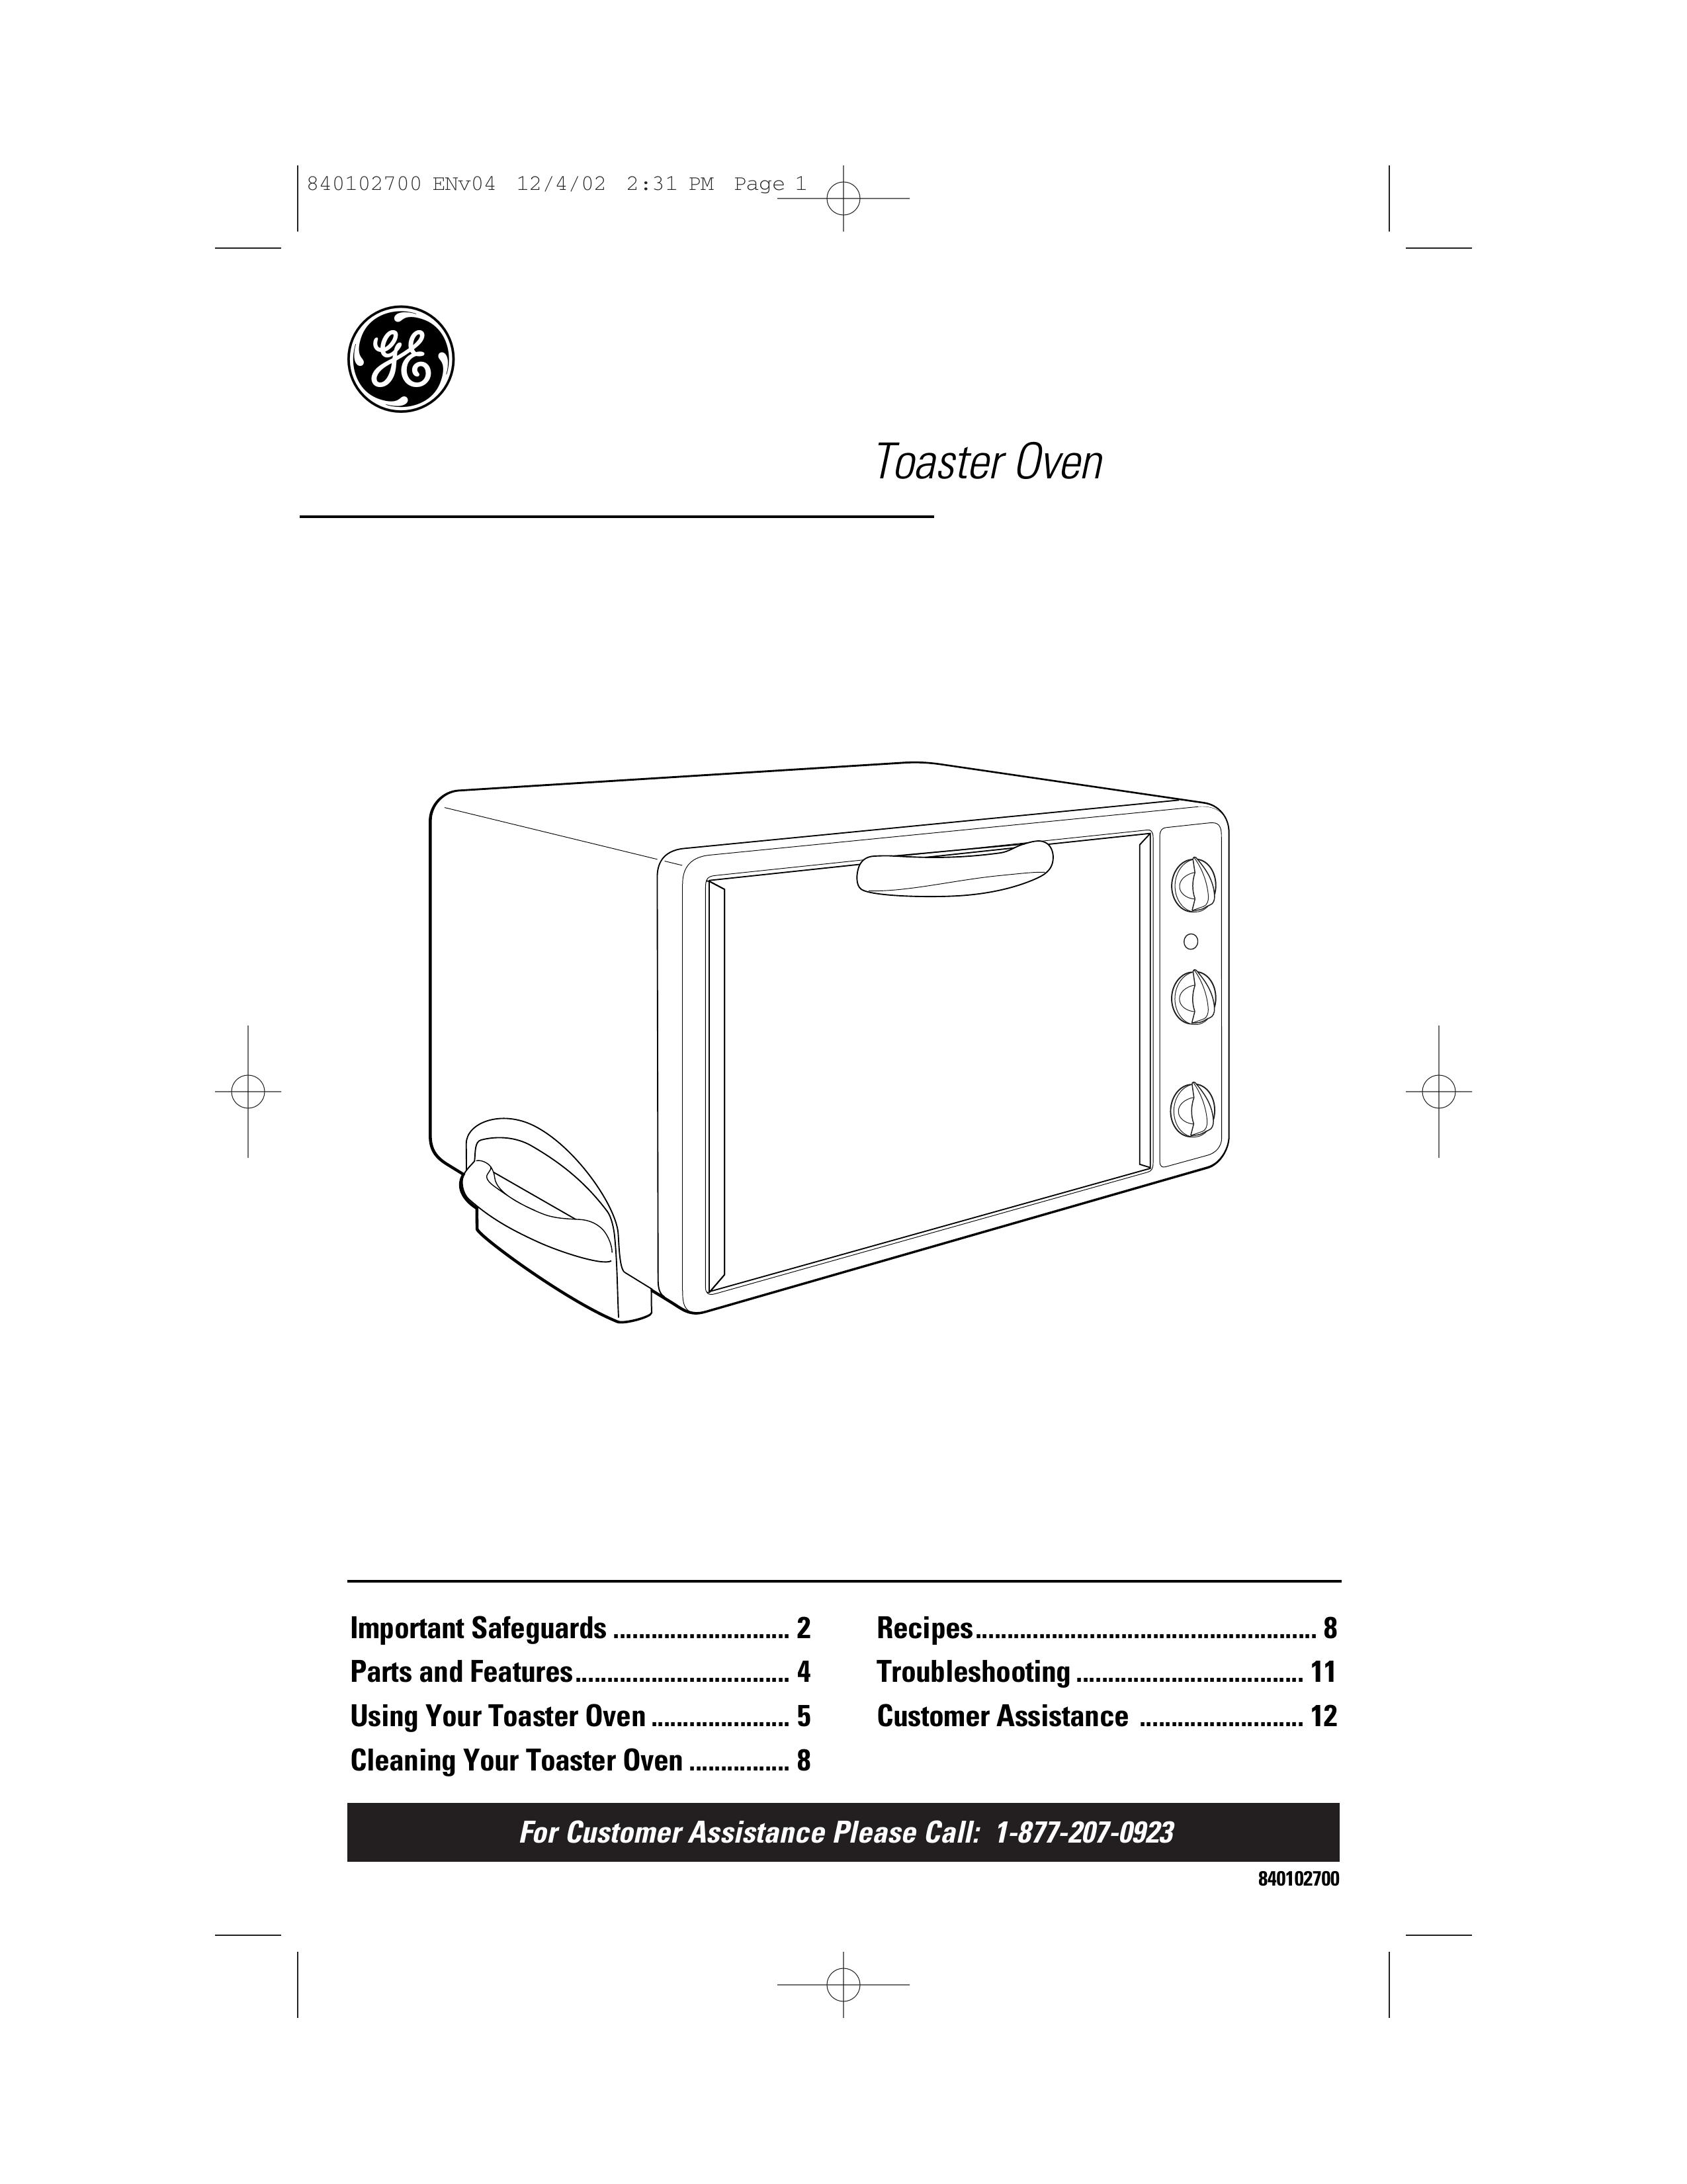 GE 106686 Toaster User Manual